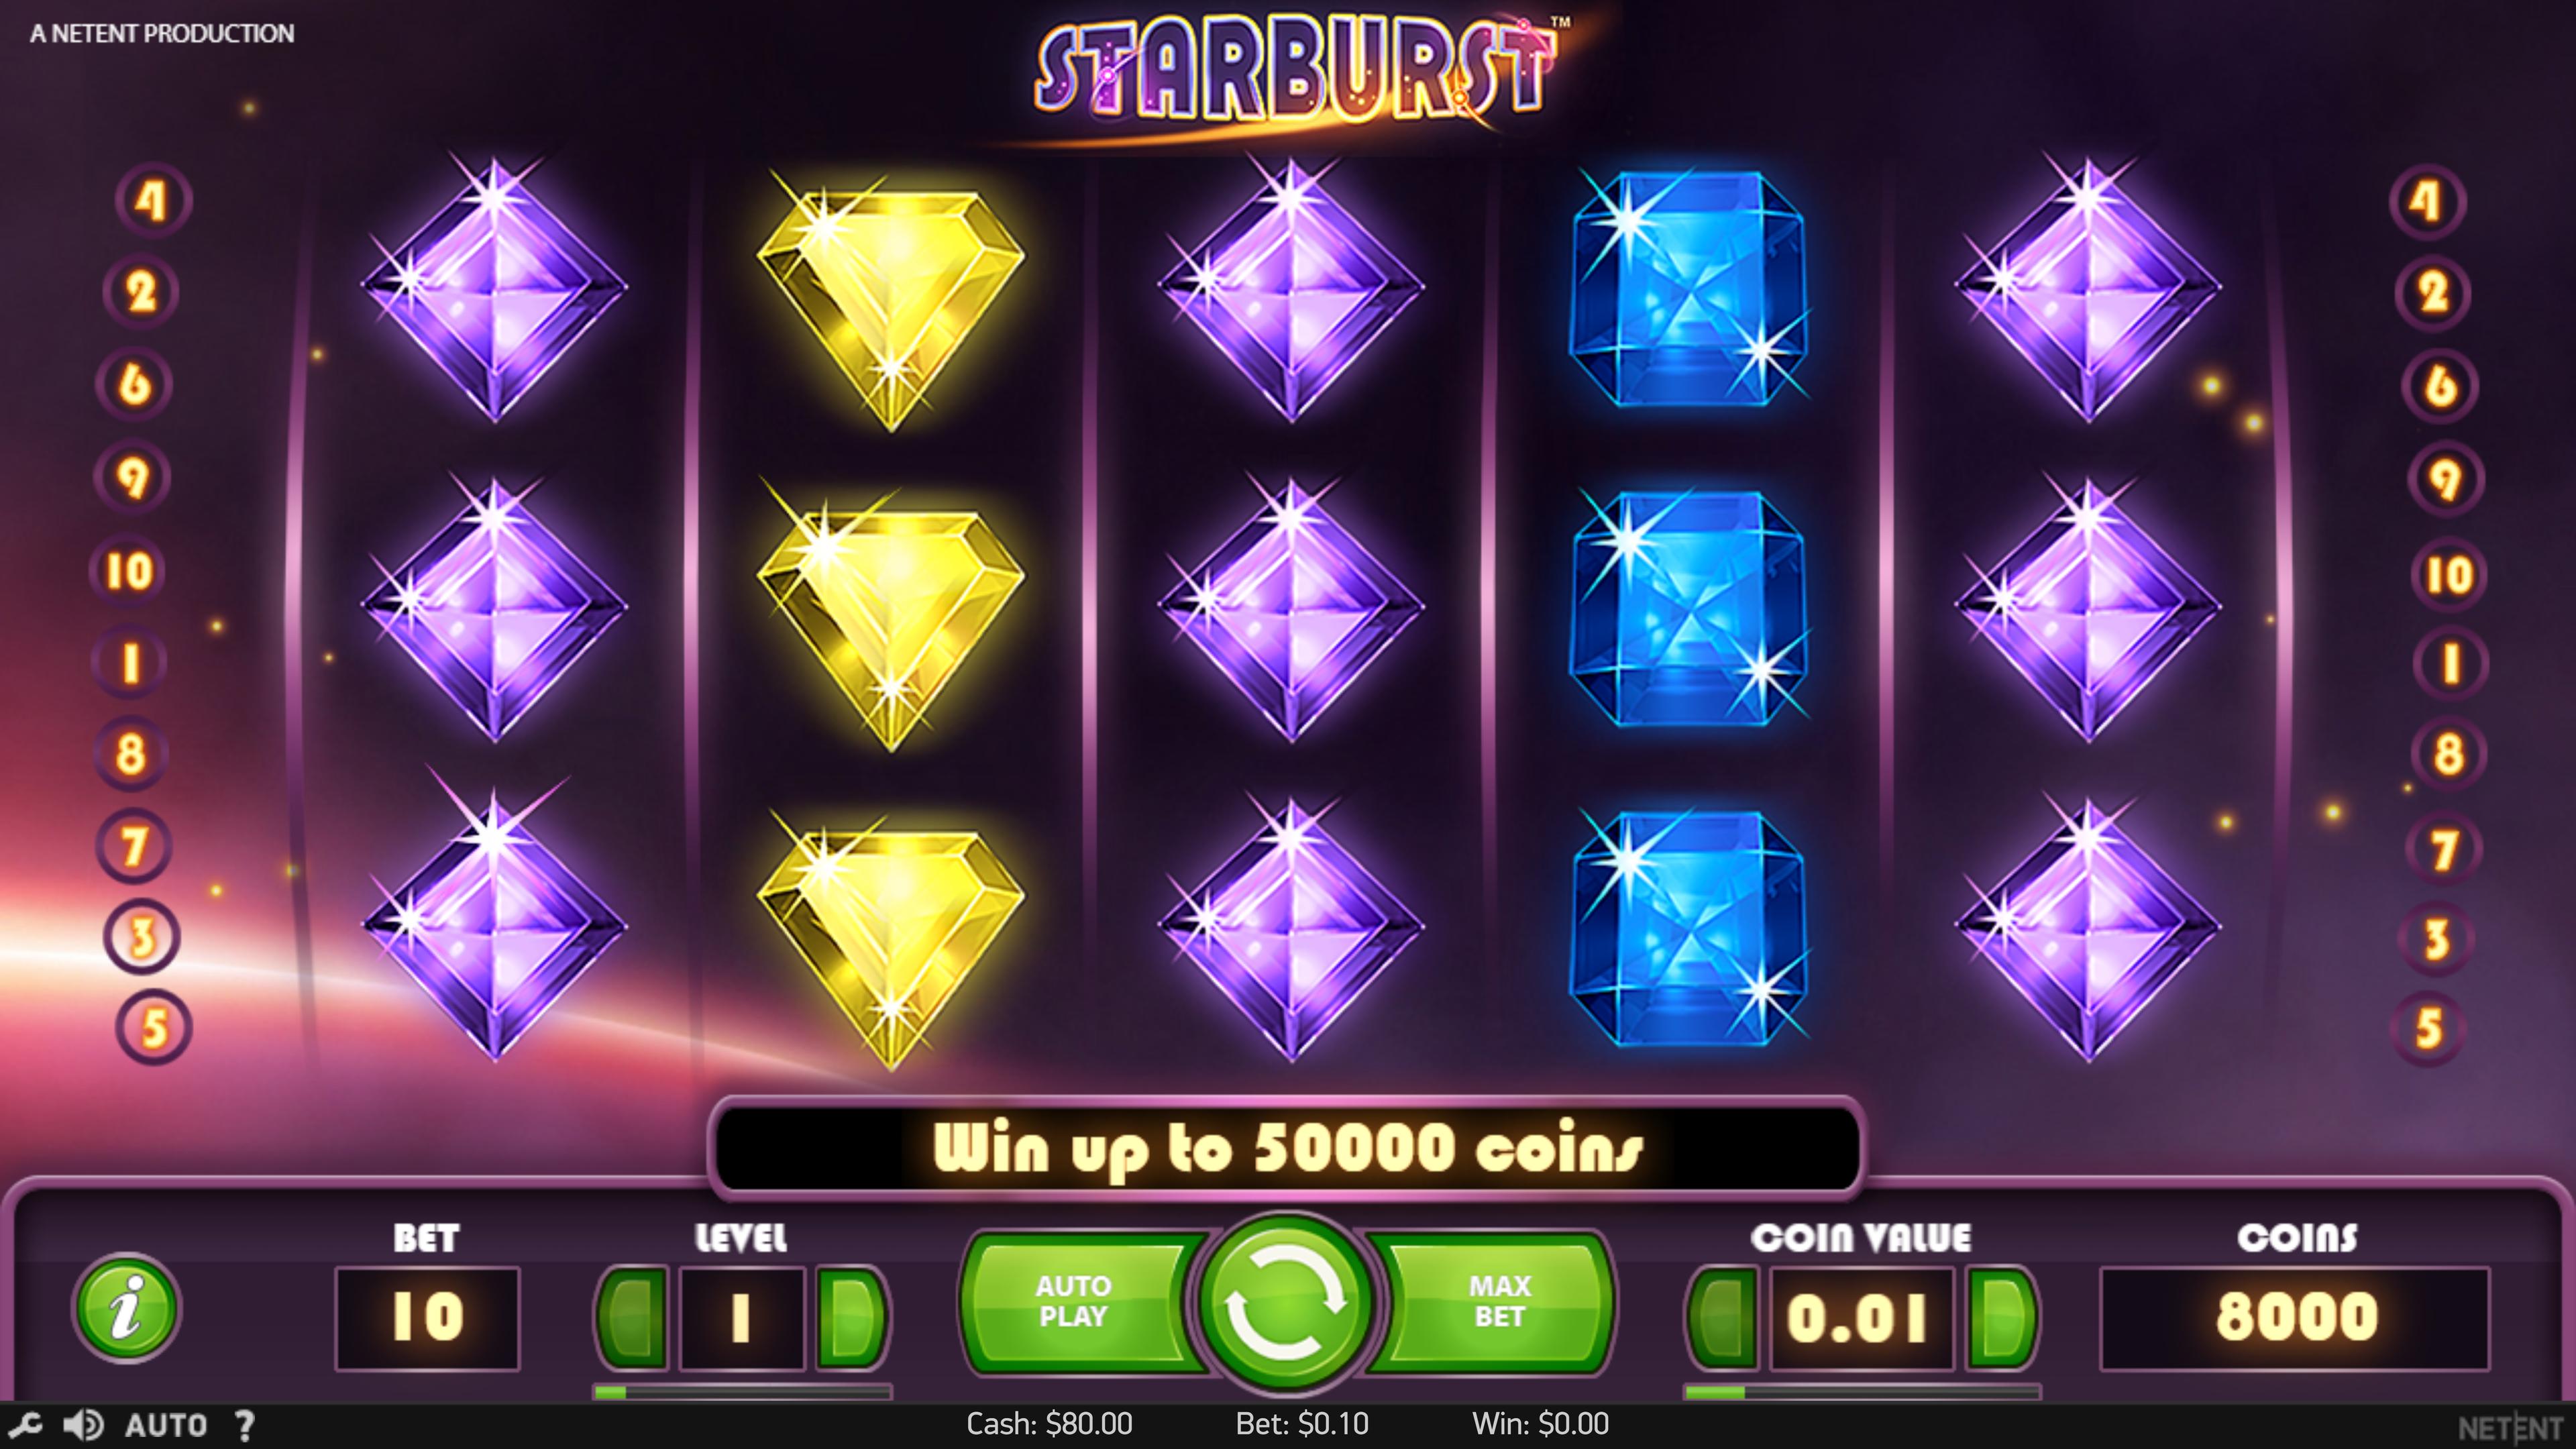 Starburst mobile game screenshot